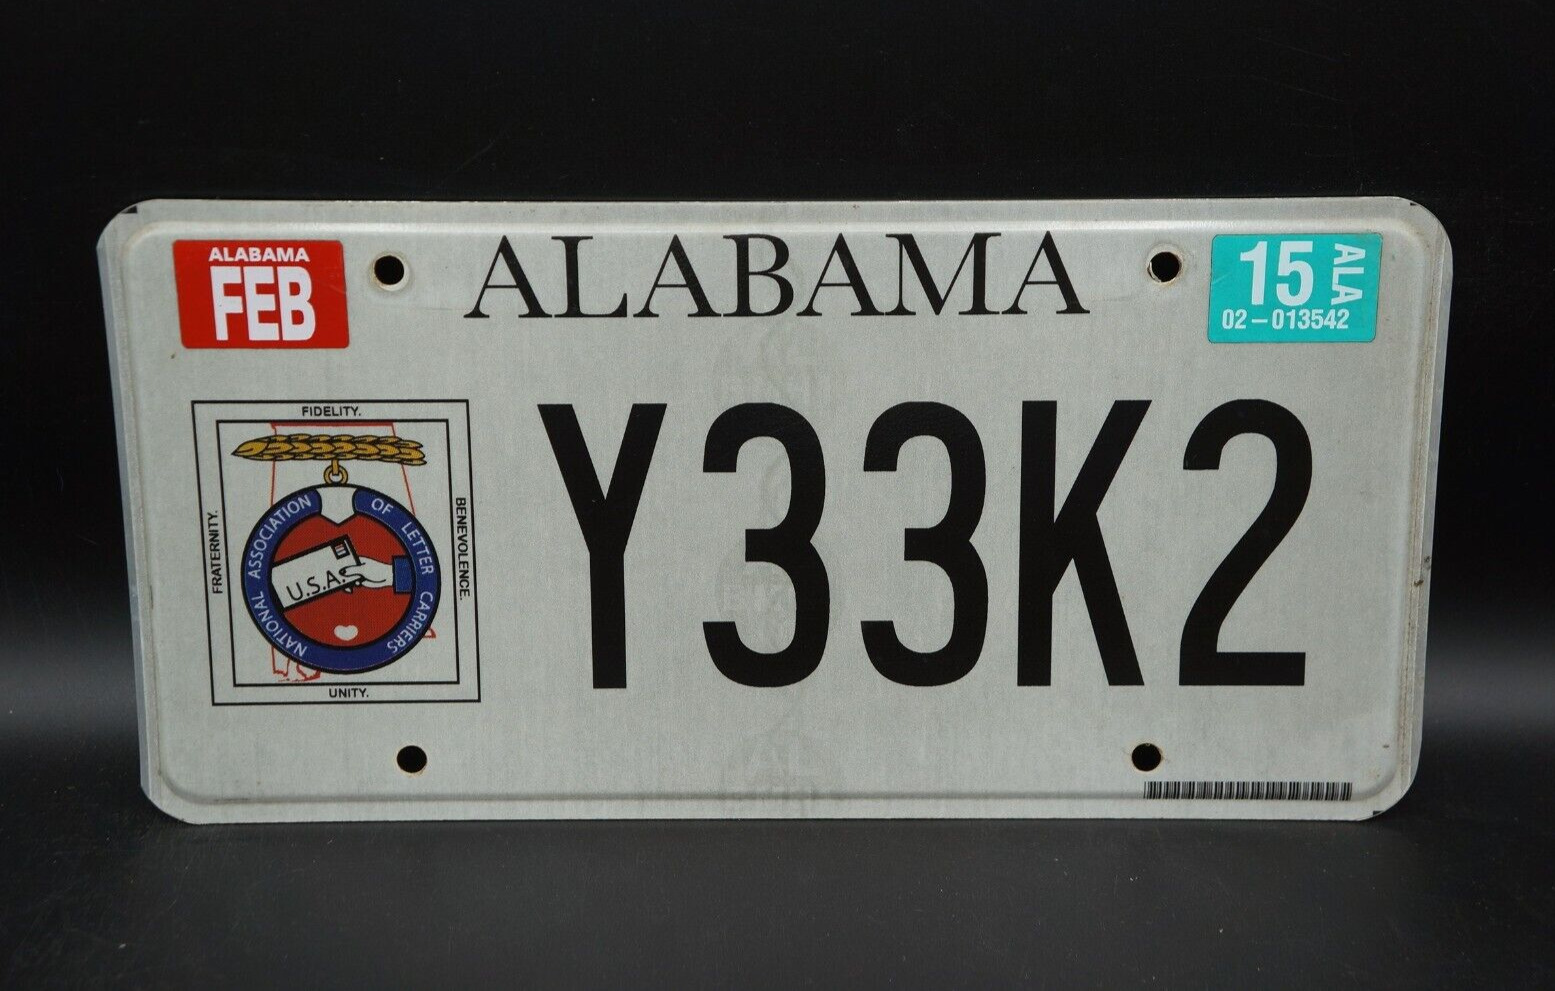 2015 Alabama MAILMAN License Plate - Postal Letter Carrier